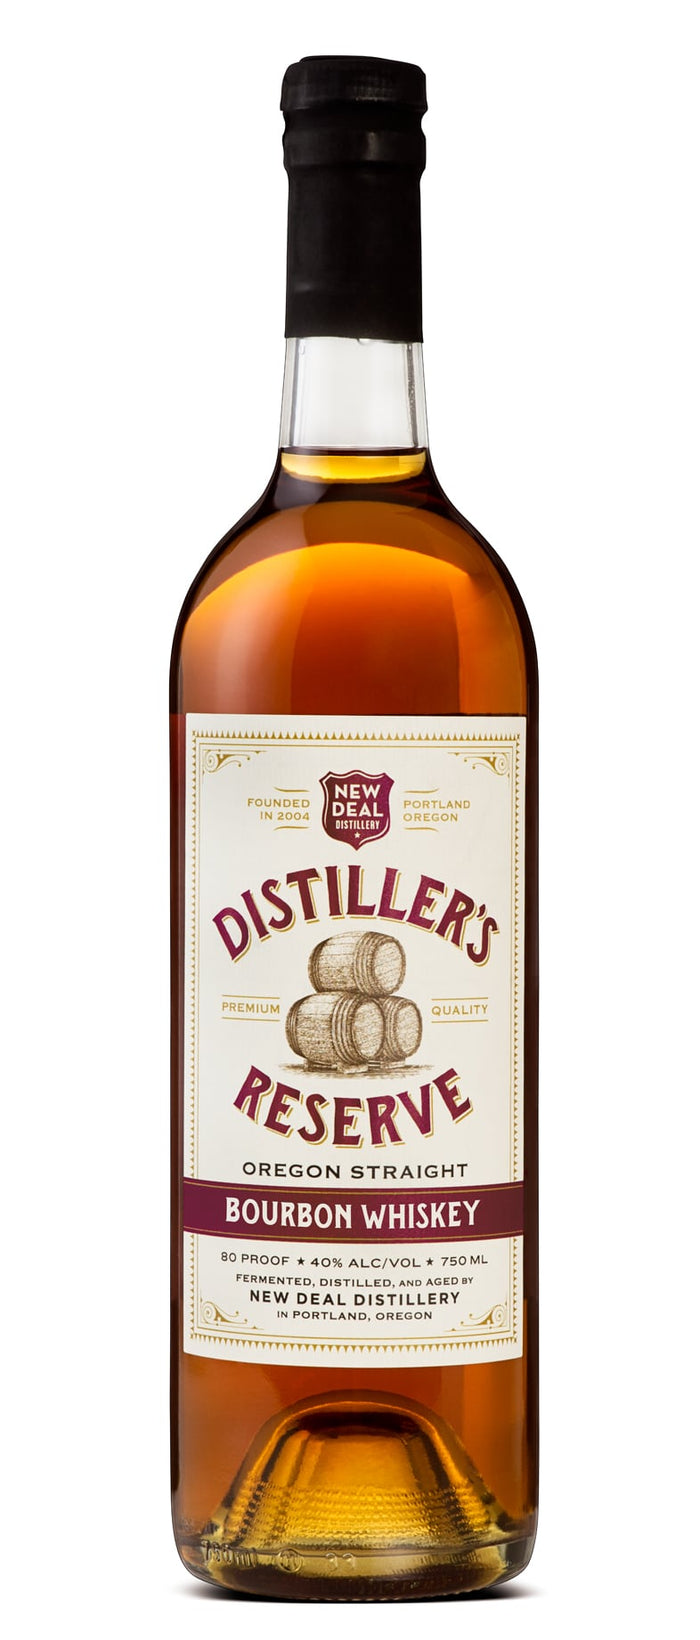 New Deal Distiller’s Reserve Oregon Straight Bourbon Whiskey